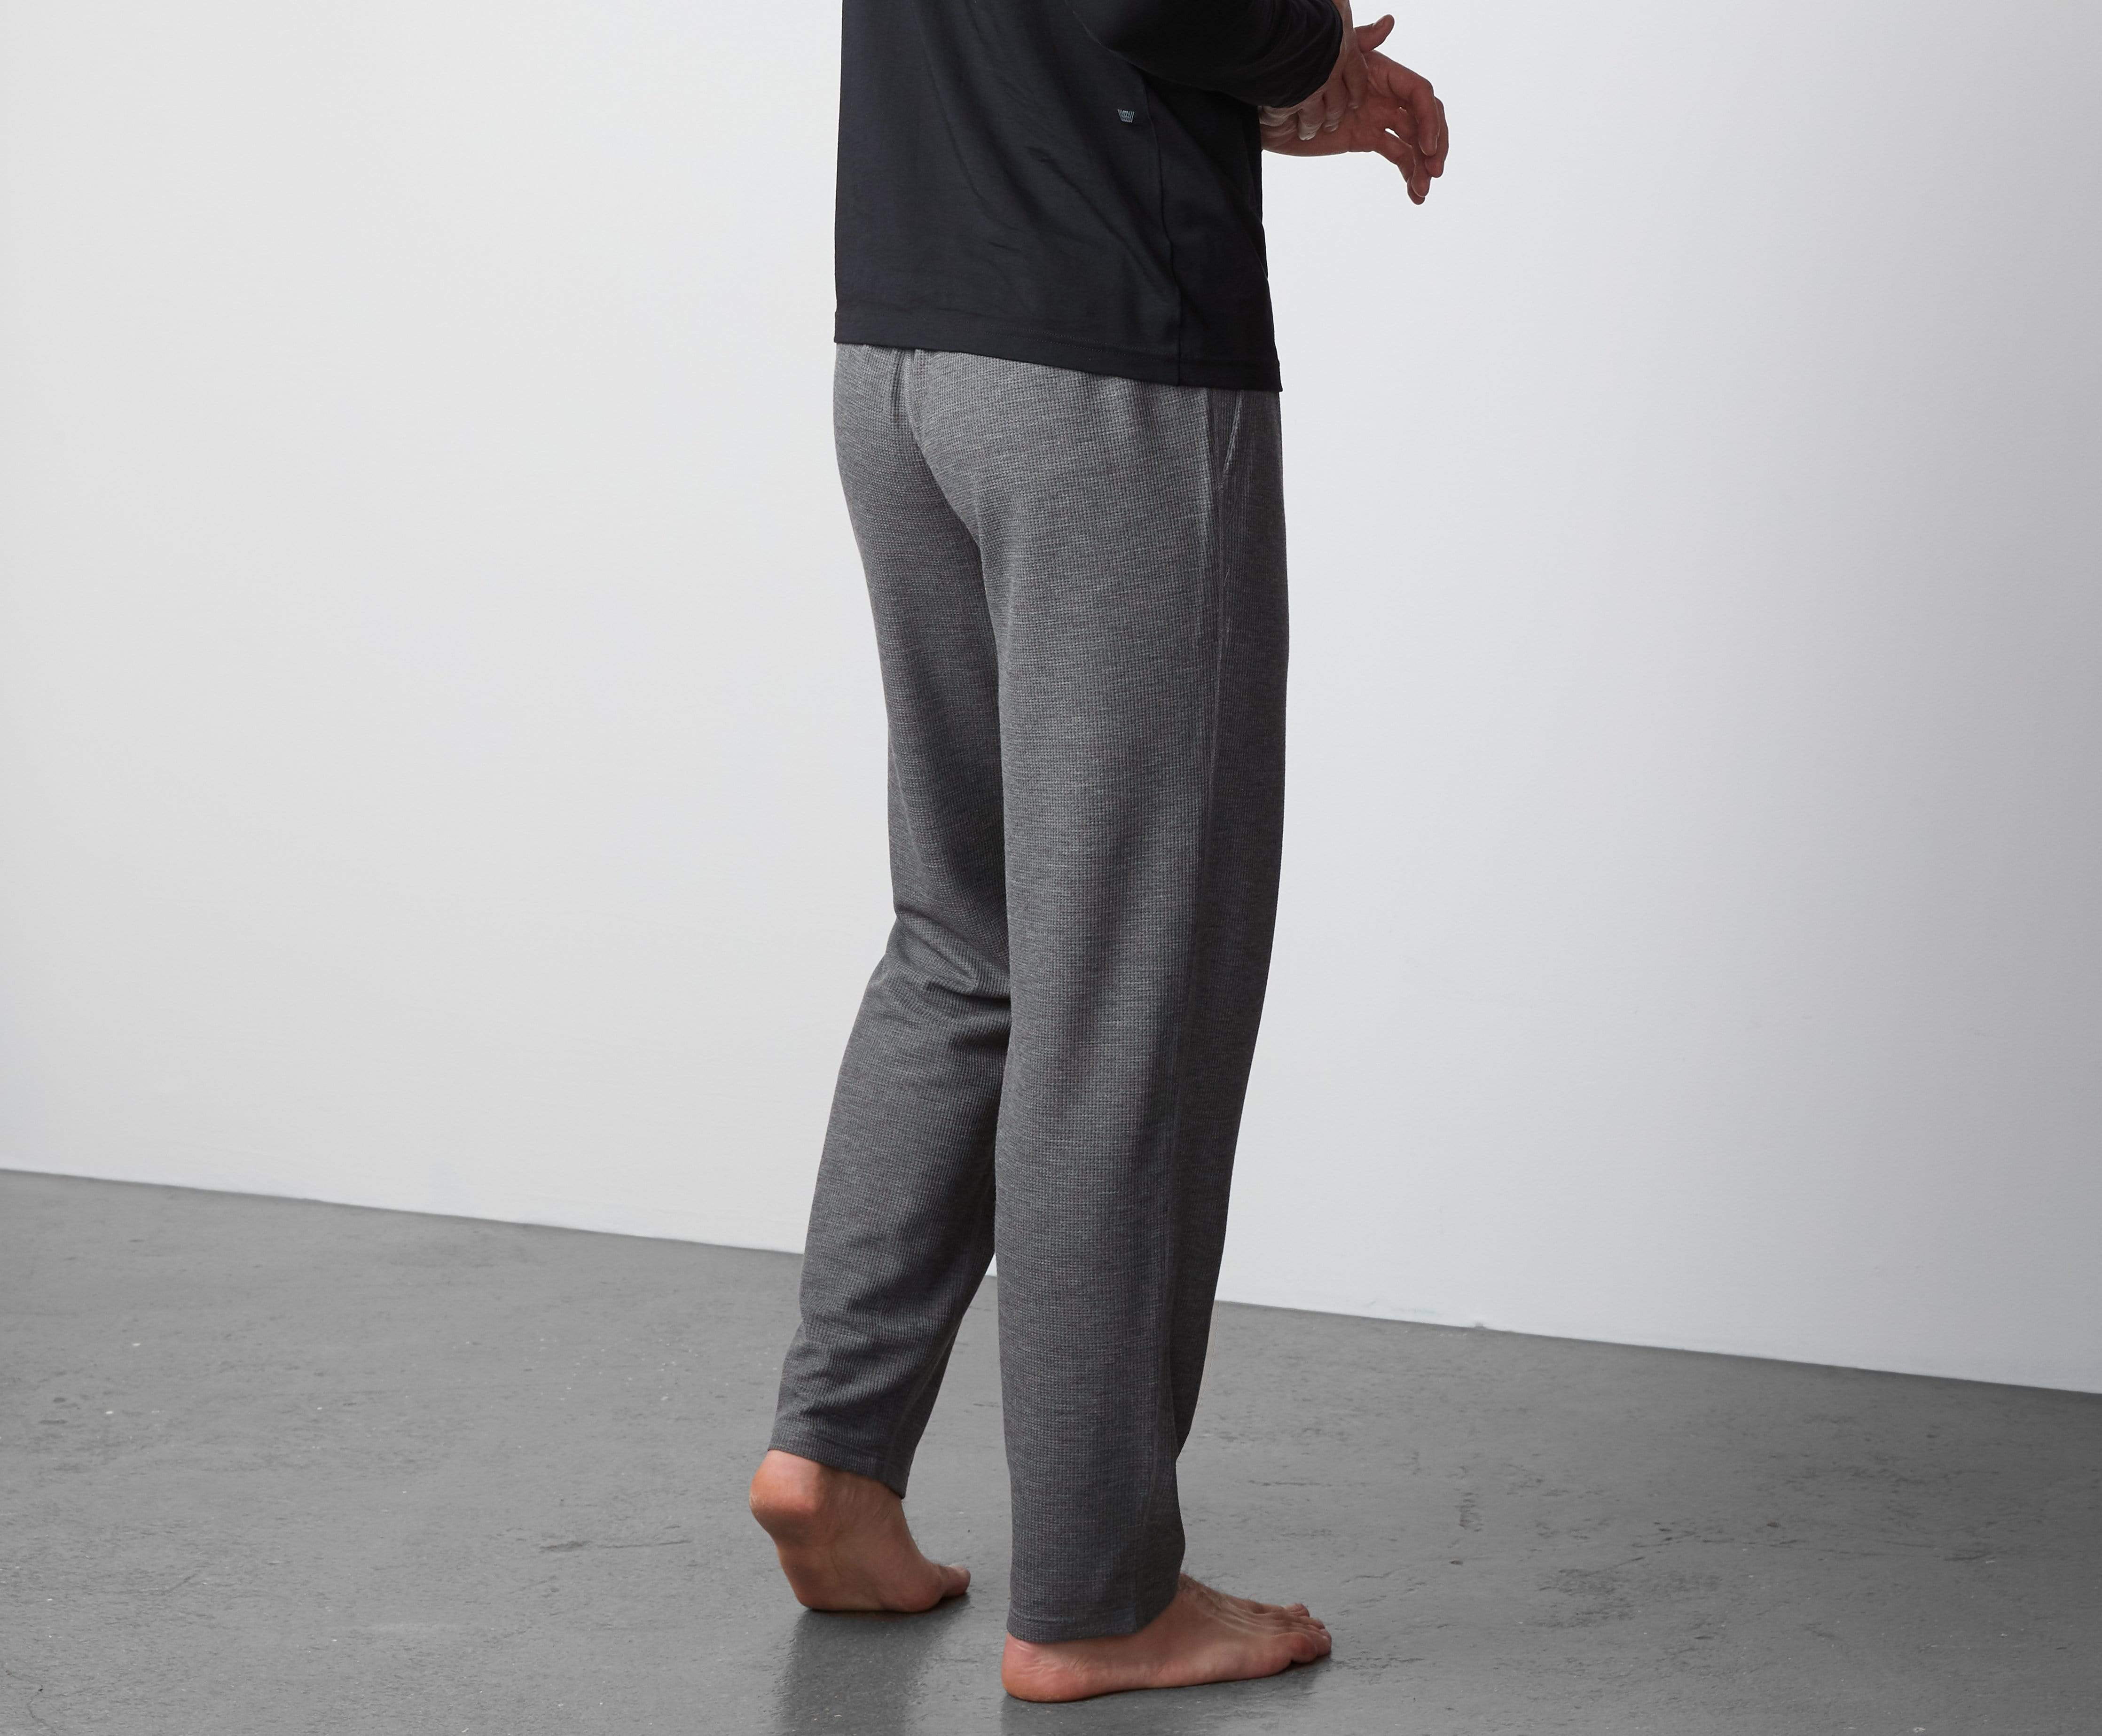 Men's Loungewear, Sleepwear, & Lounge Pants | Mack Weldon